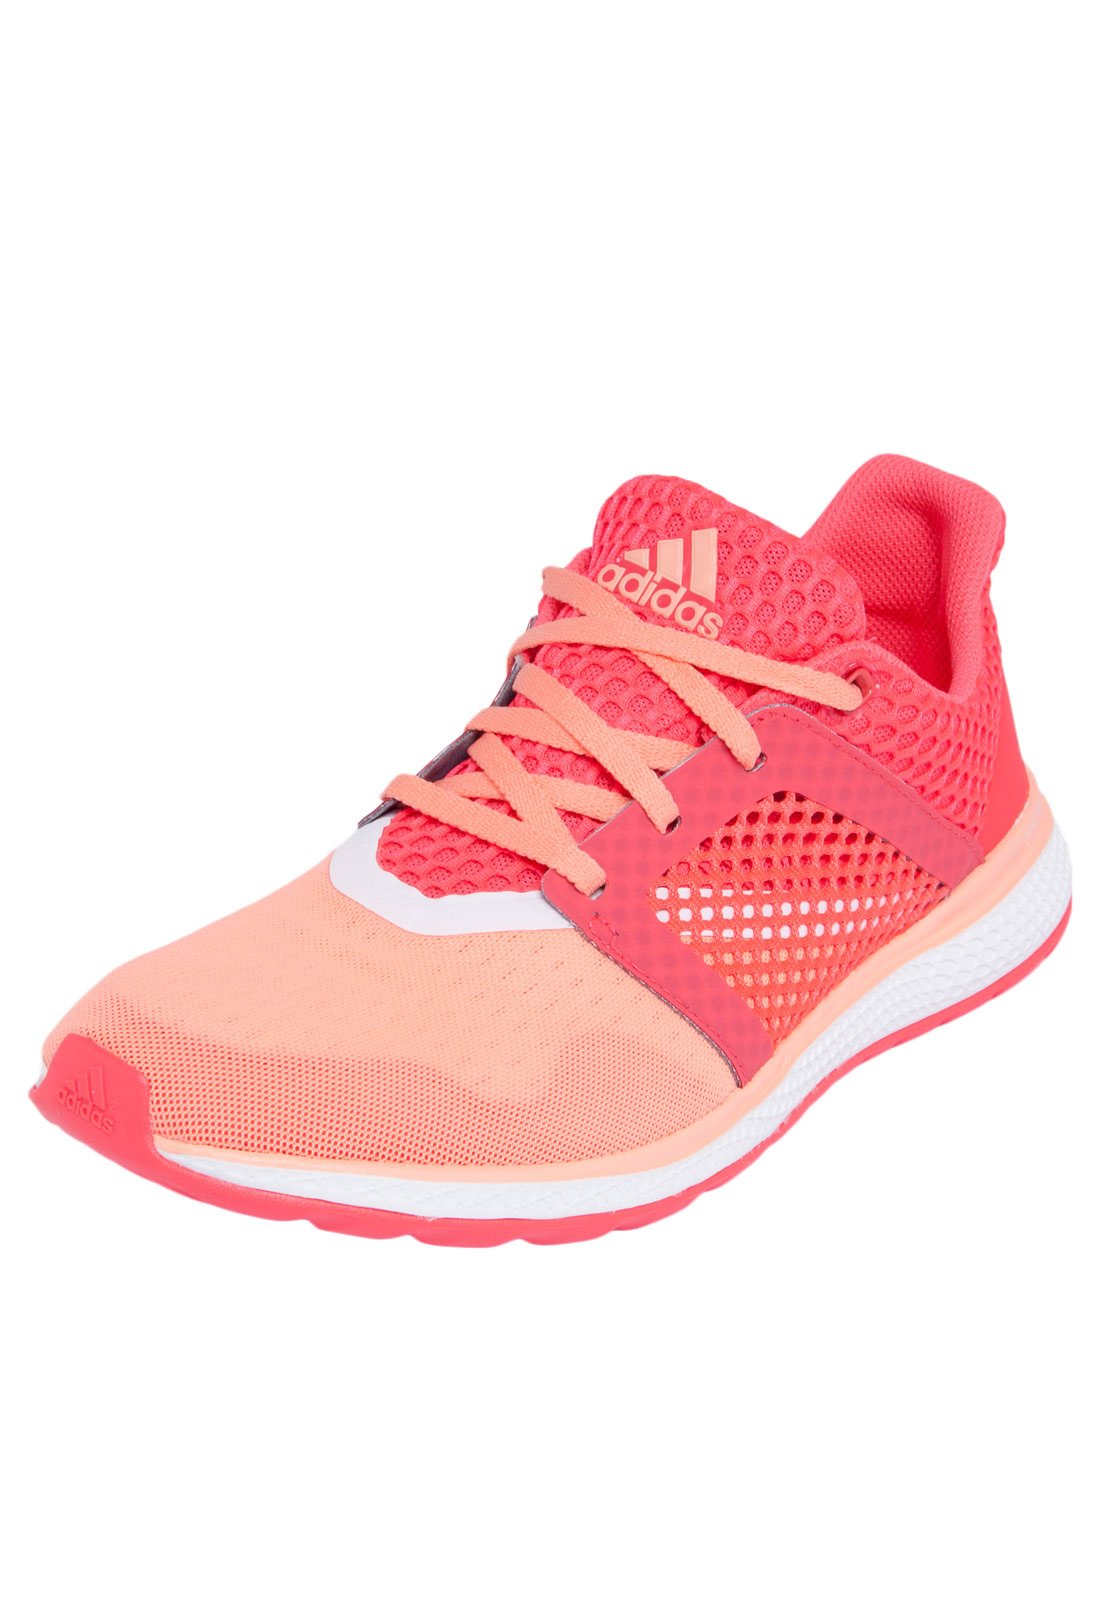 Tênis adidas Energy 2 W Rosa - Compre Agora | Kanui